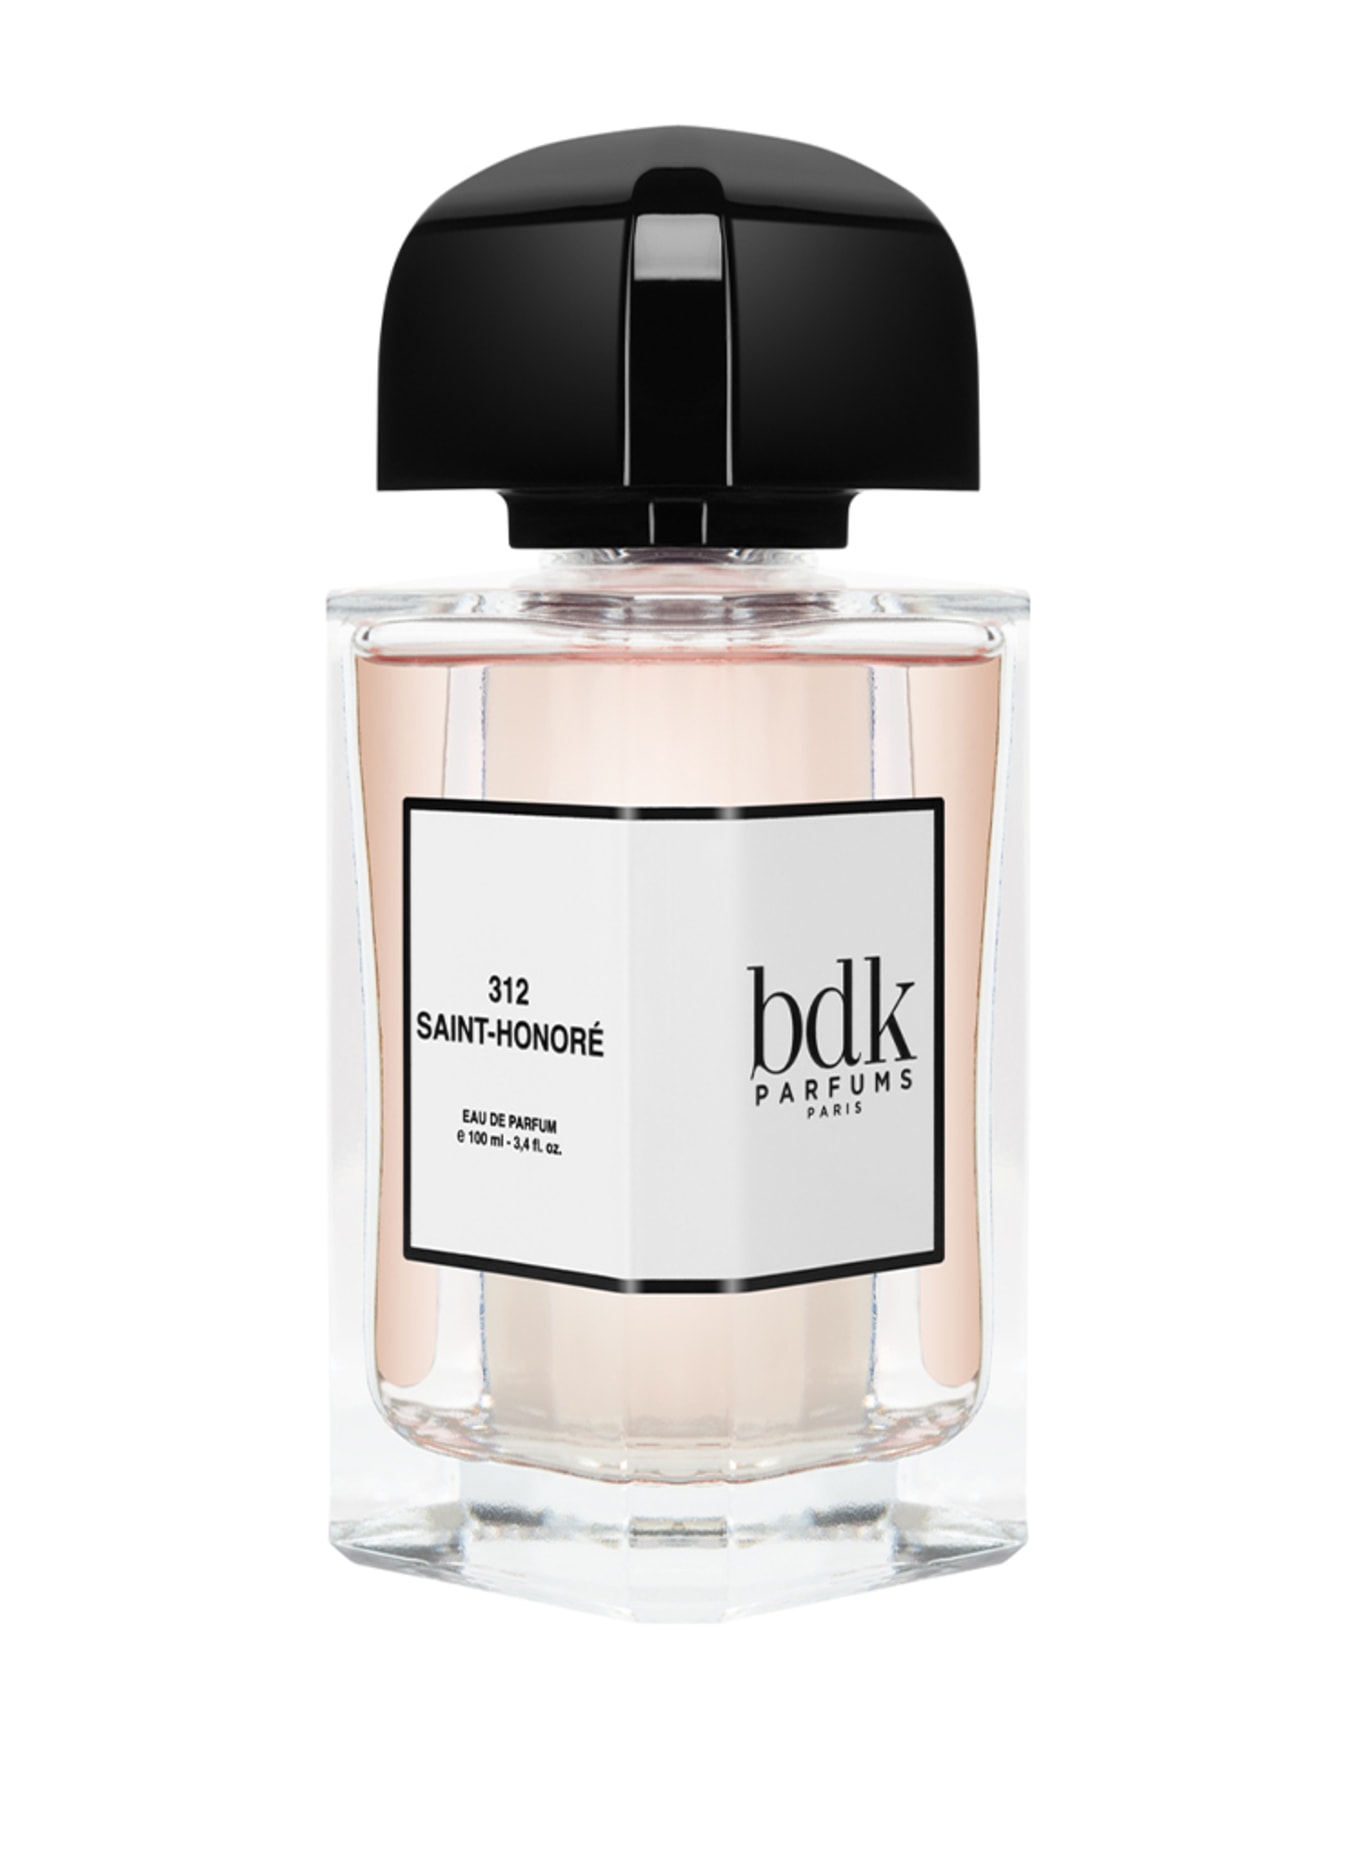 bdk Parfums 312 SAINT-HONORÉ (Obrazek 1)